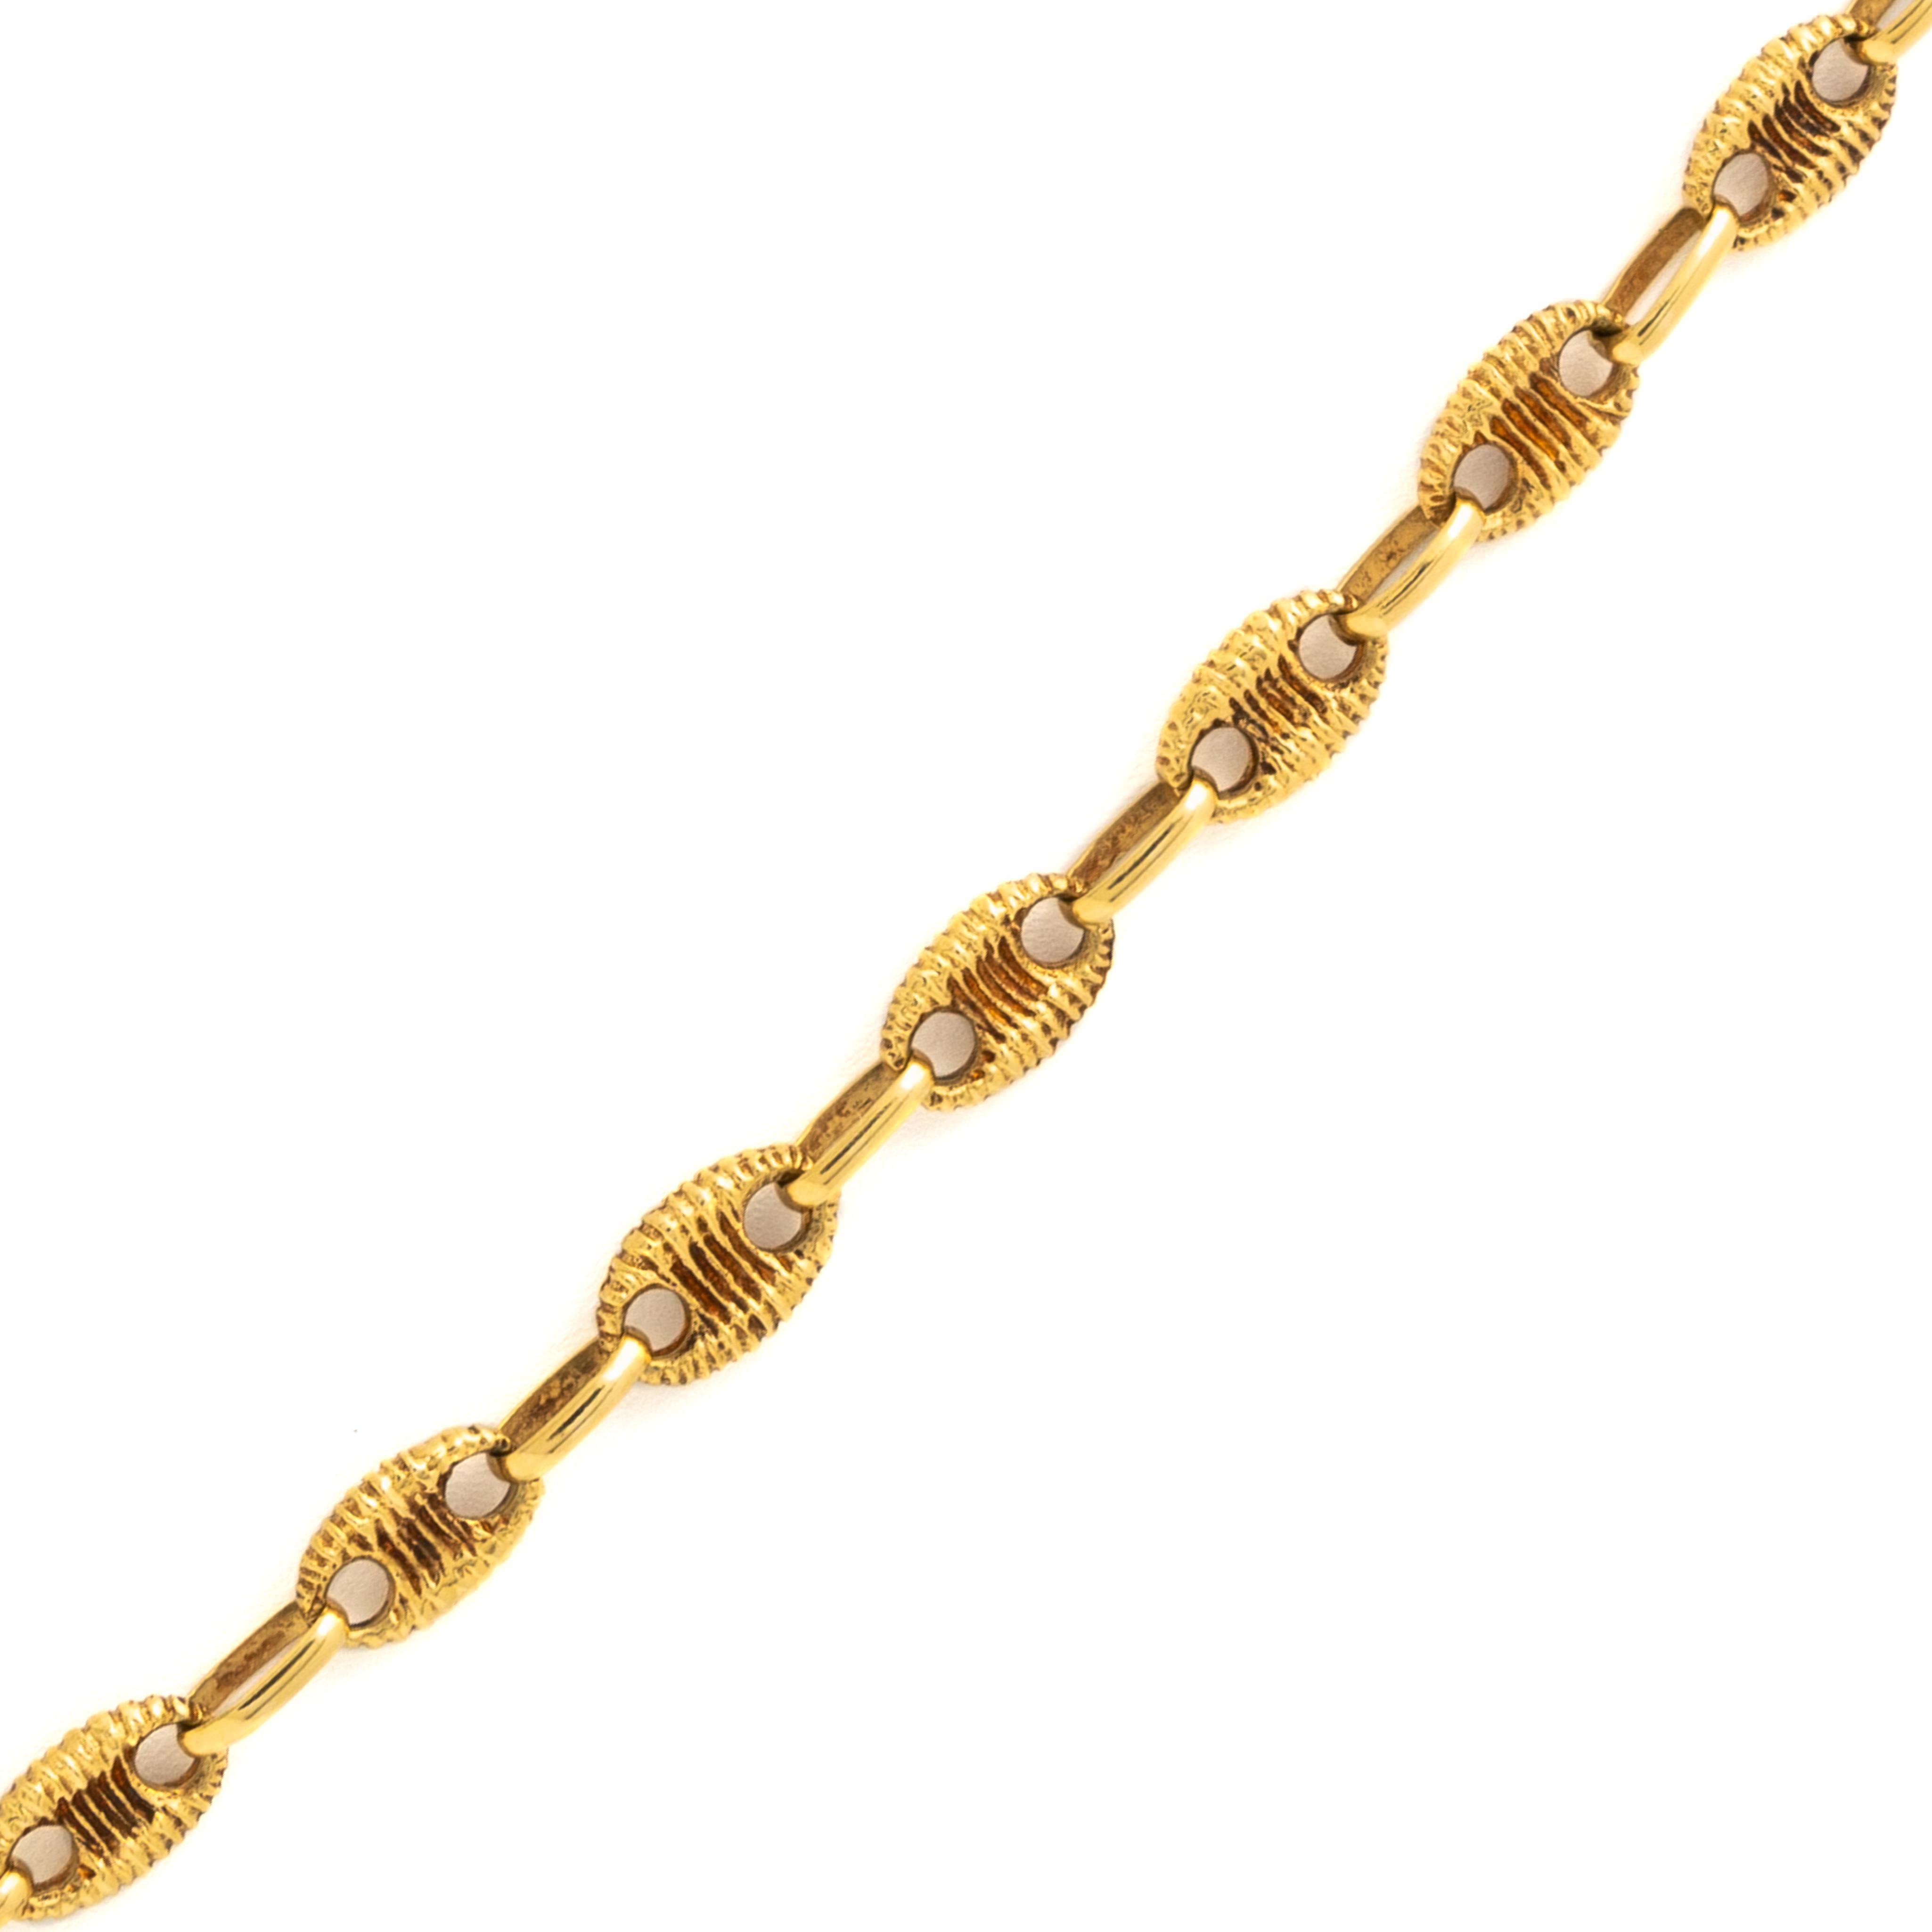 Modern Vintage 18 Karat Yellow Gold Textured Marine Link Chain c.1970s